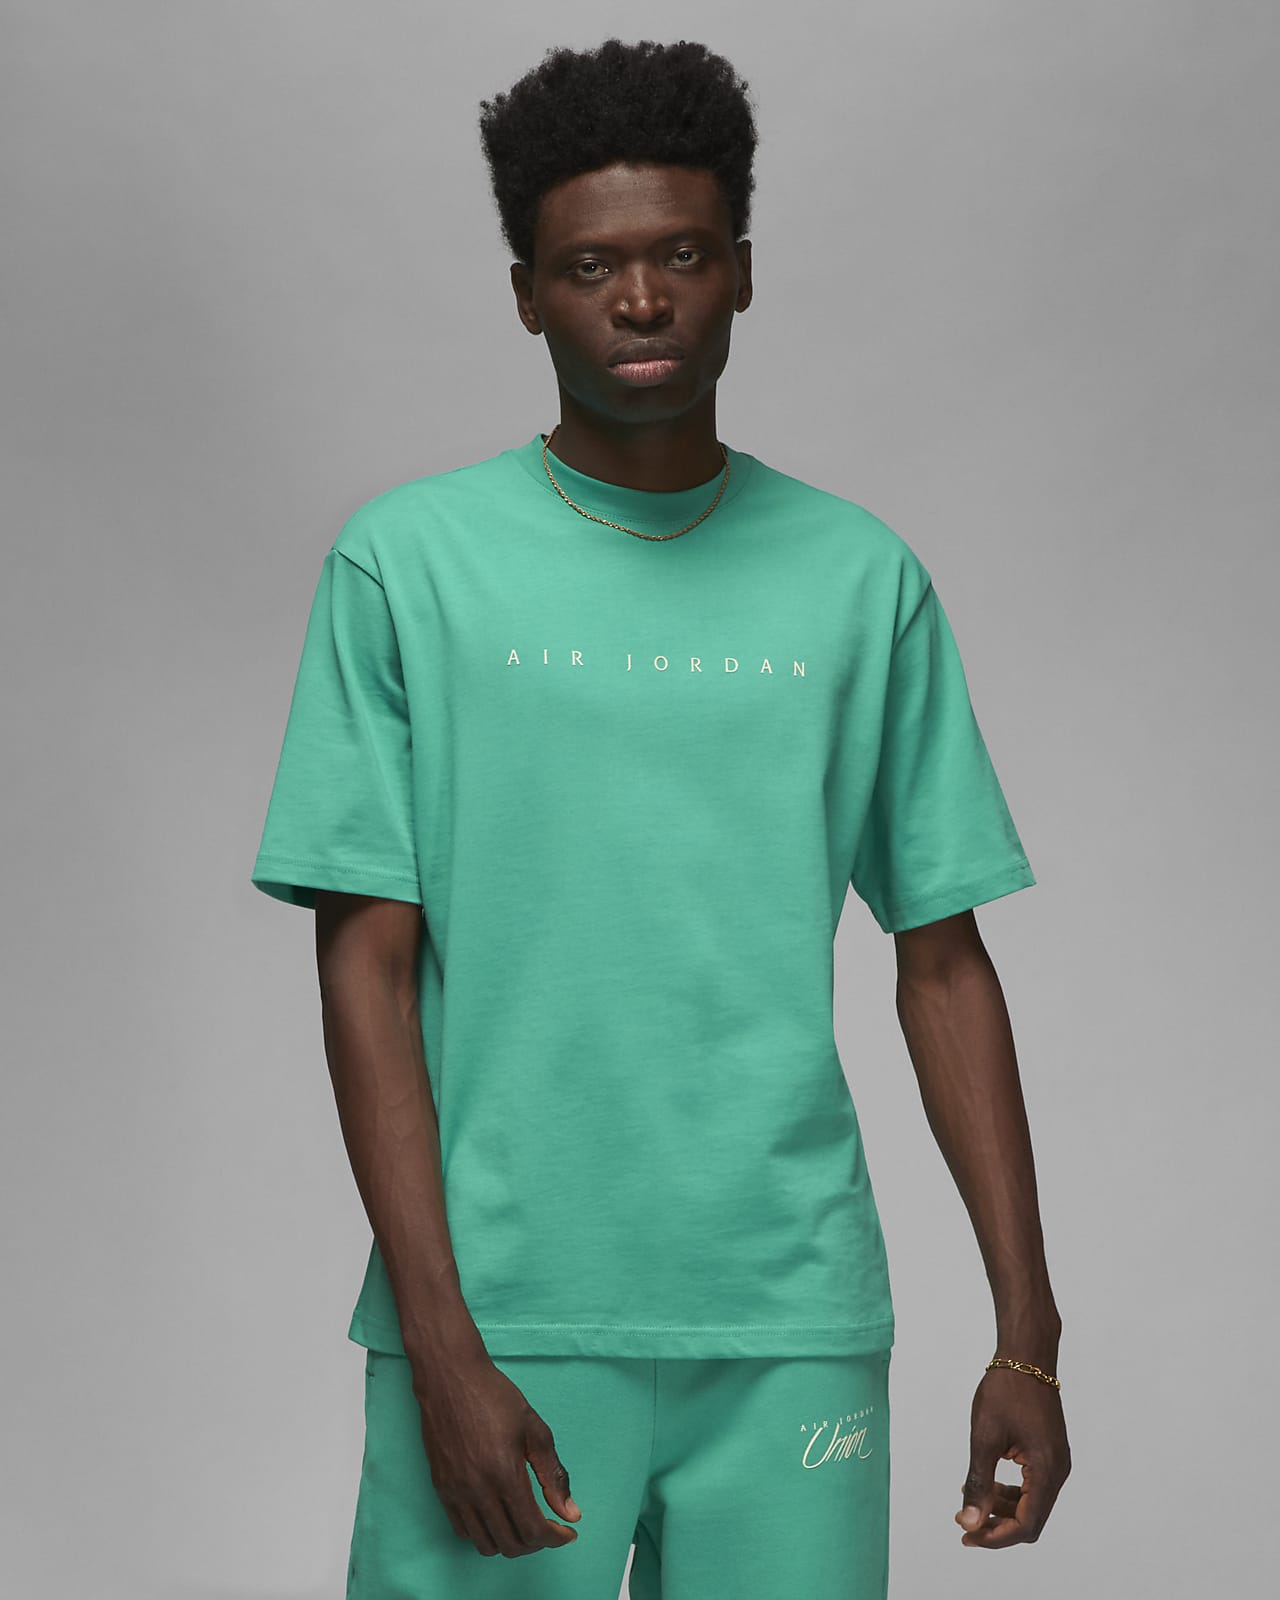 Jordan x Union Men's T-Shirt. Nike.com